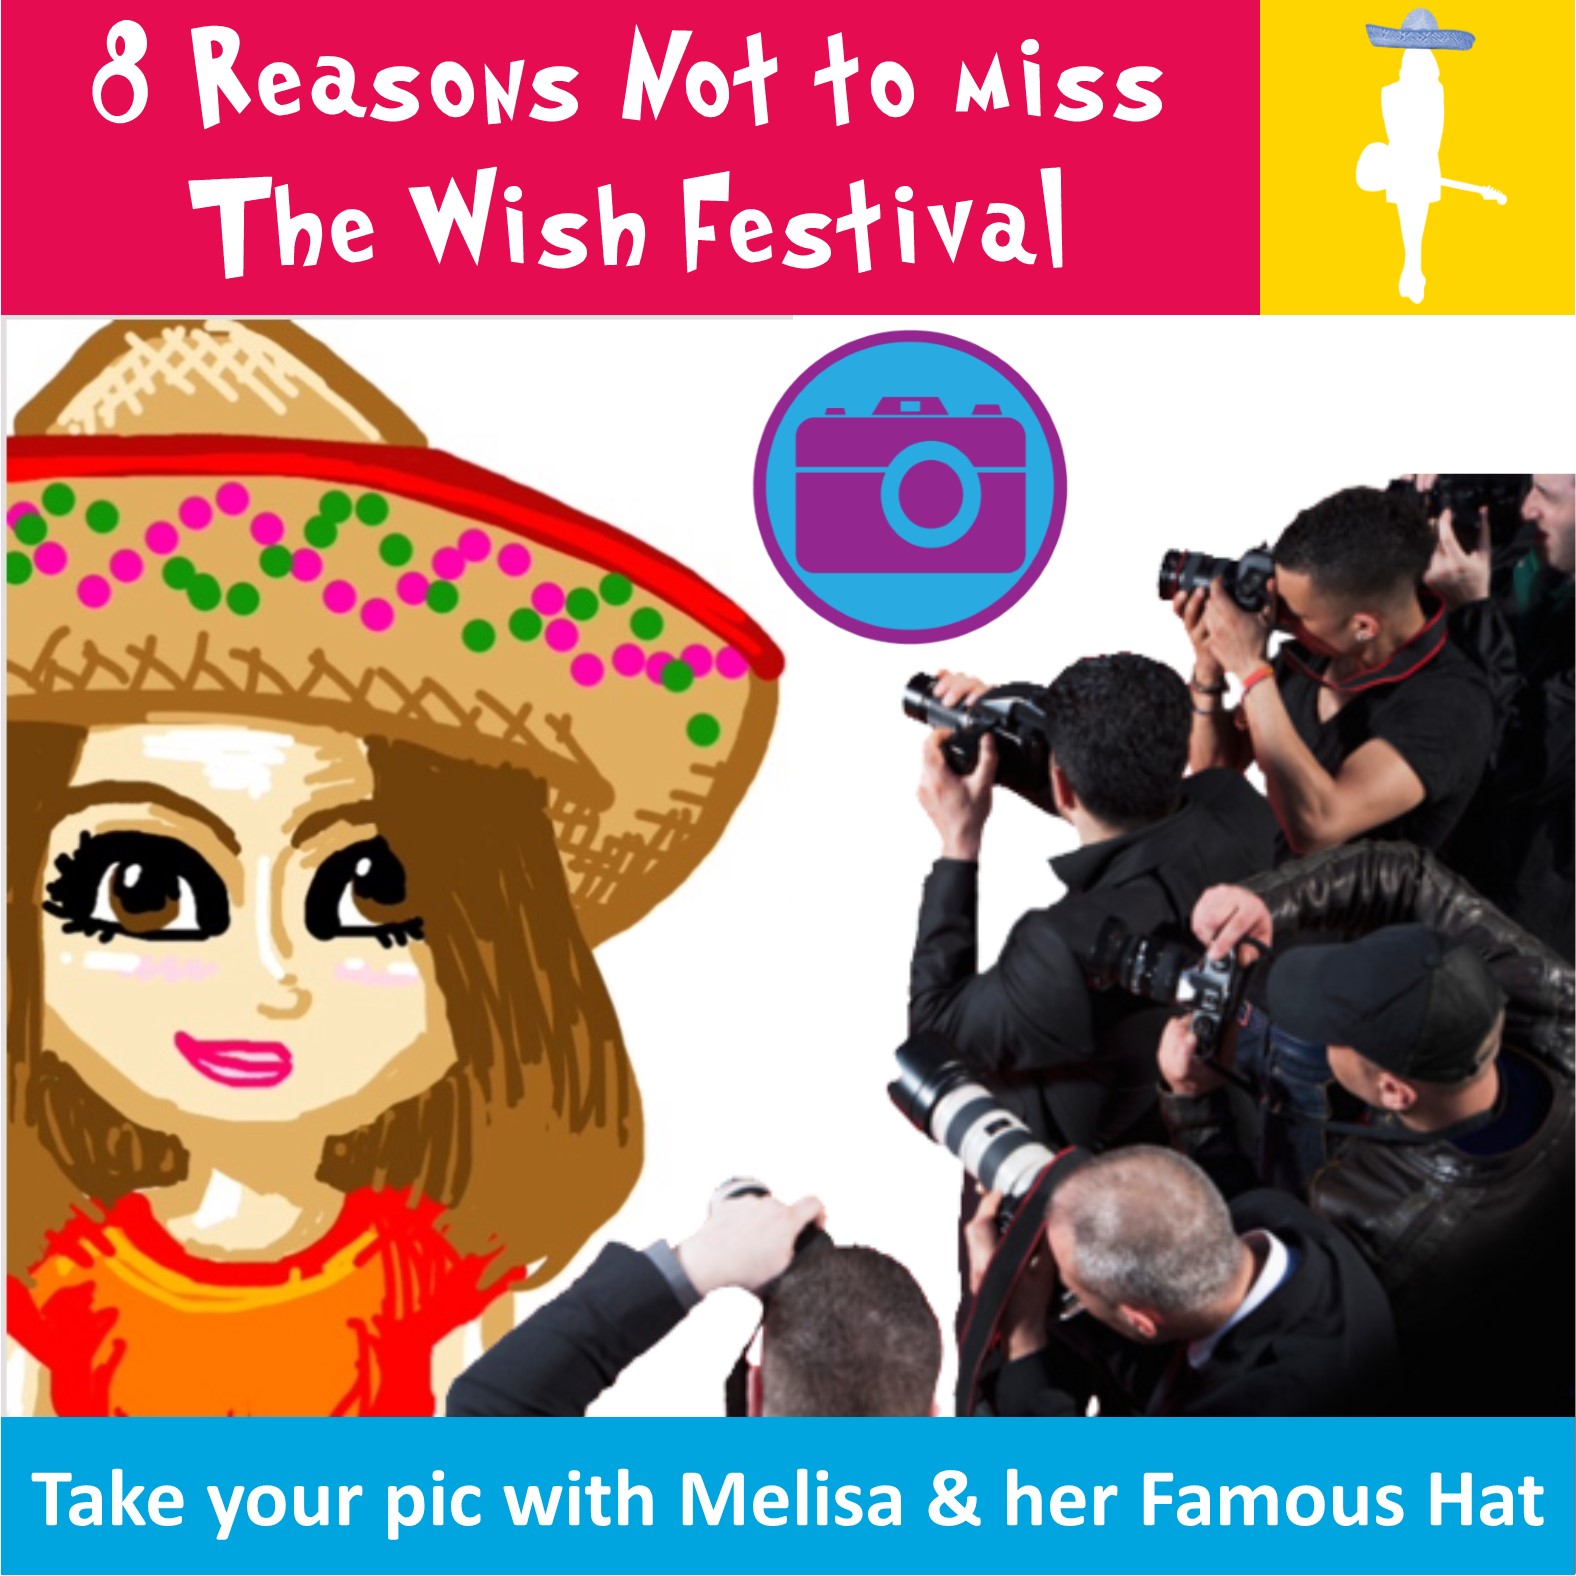 Beatie Wolfe - Wish Festival - 8 reasons - Melisa.jpg